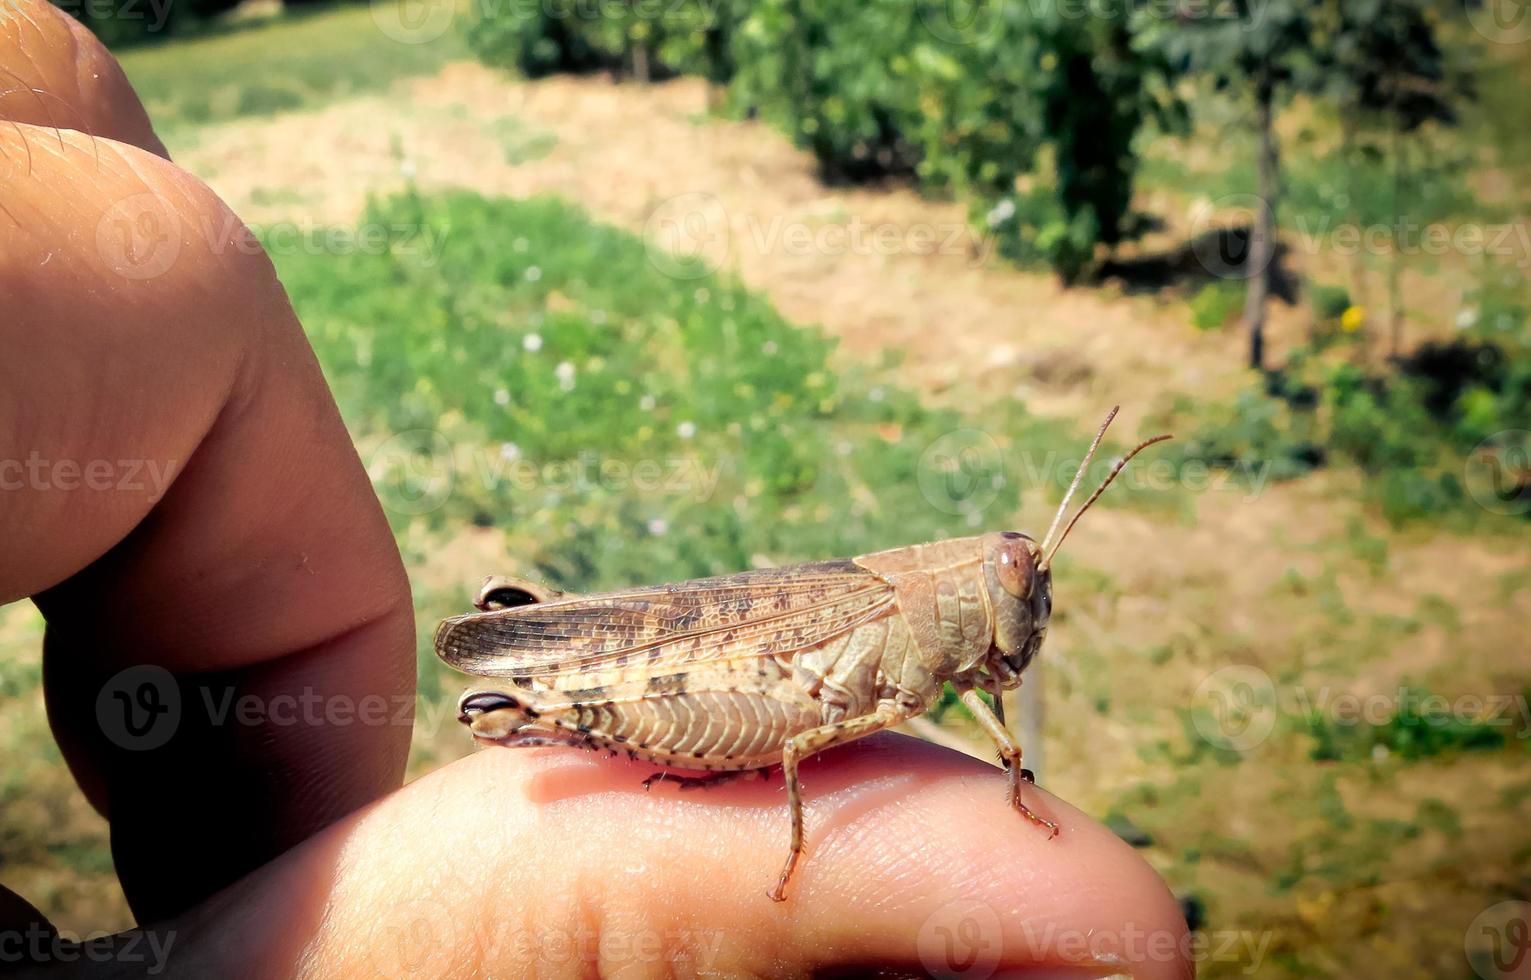 Grasshopper standing on a finger photo